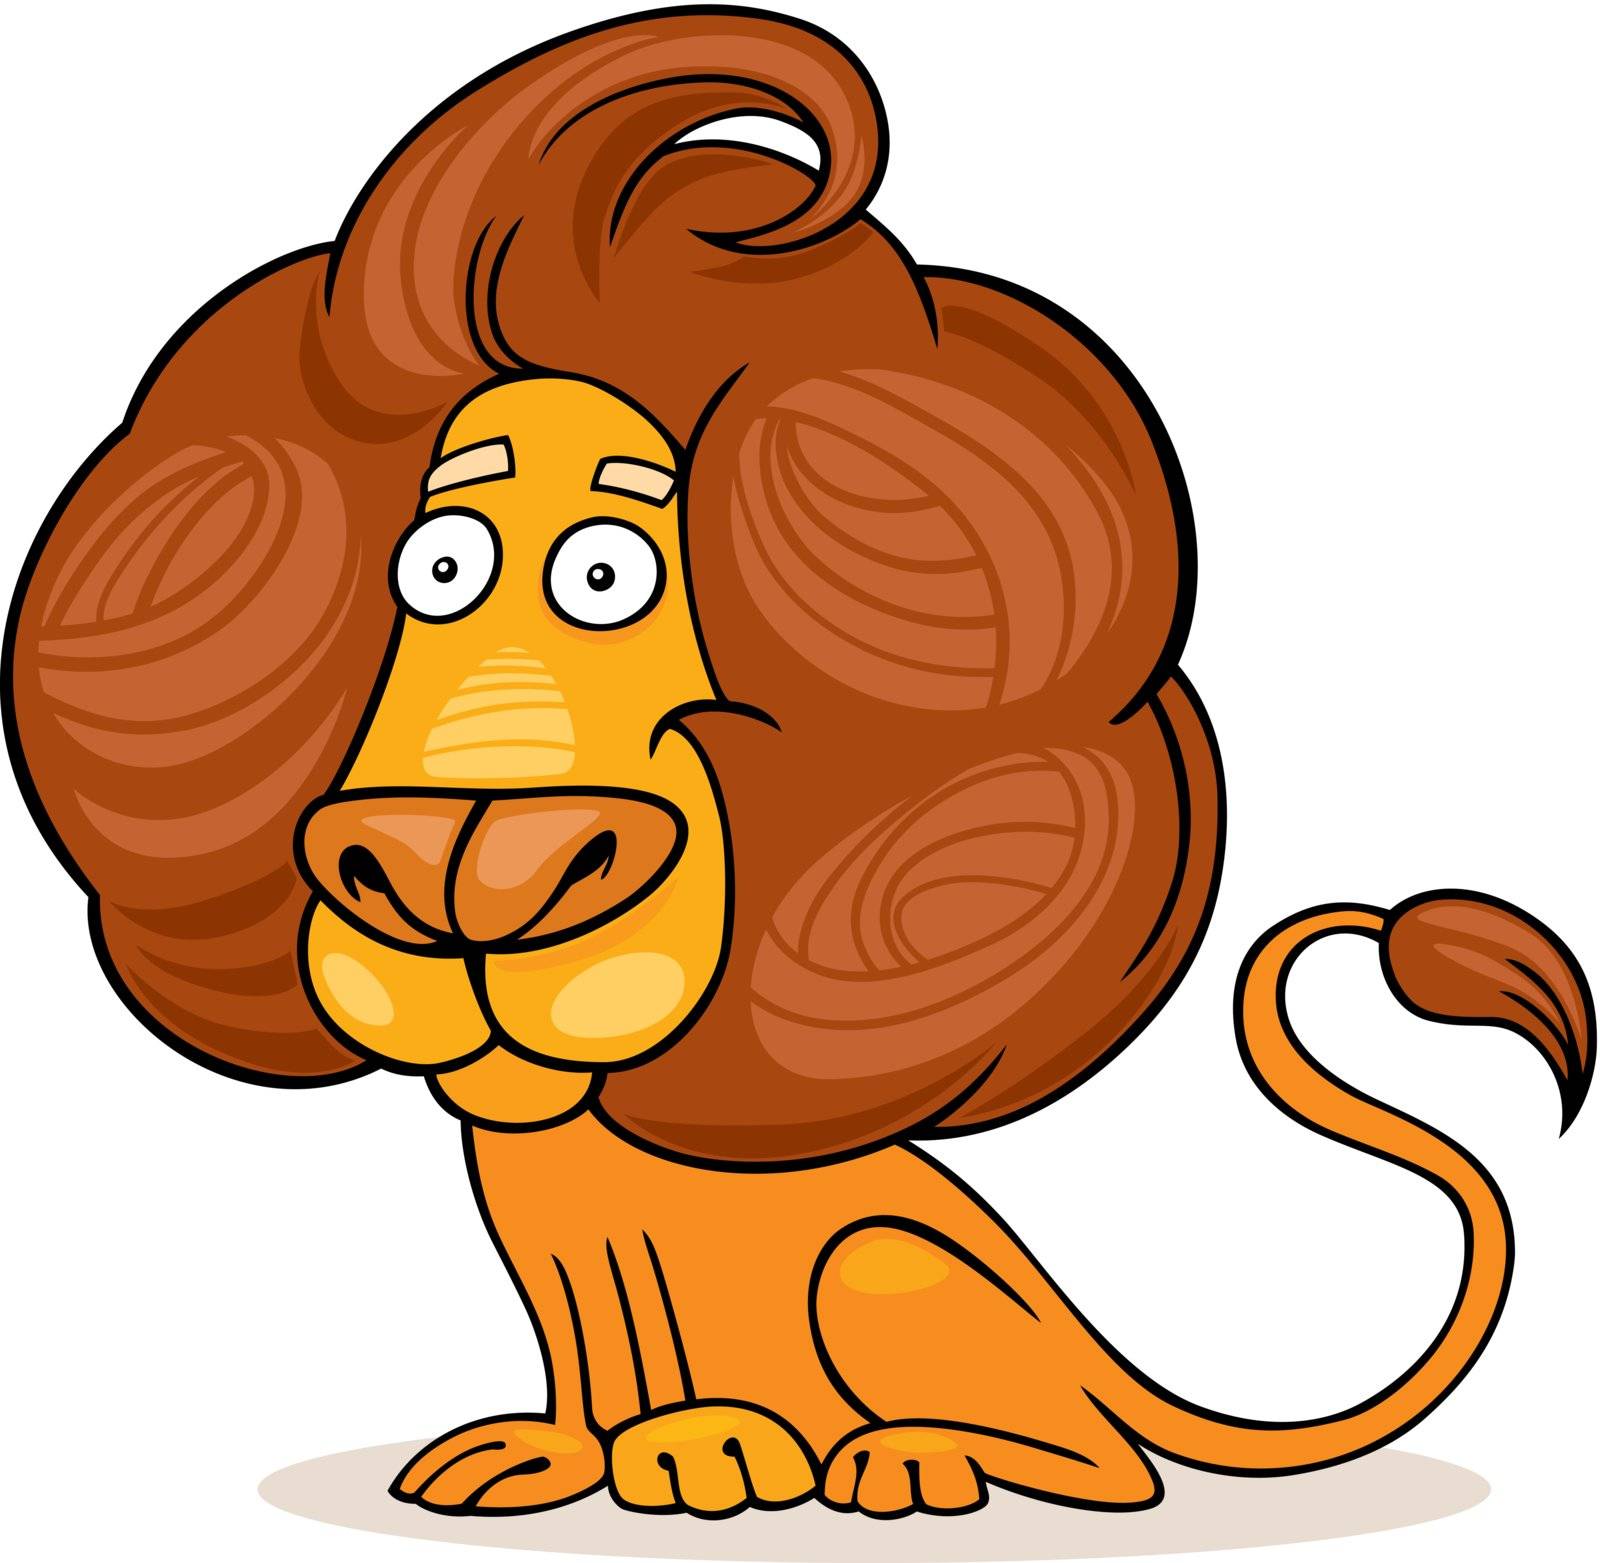 funny lion by izakowski